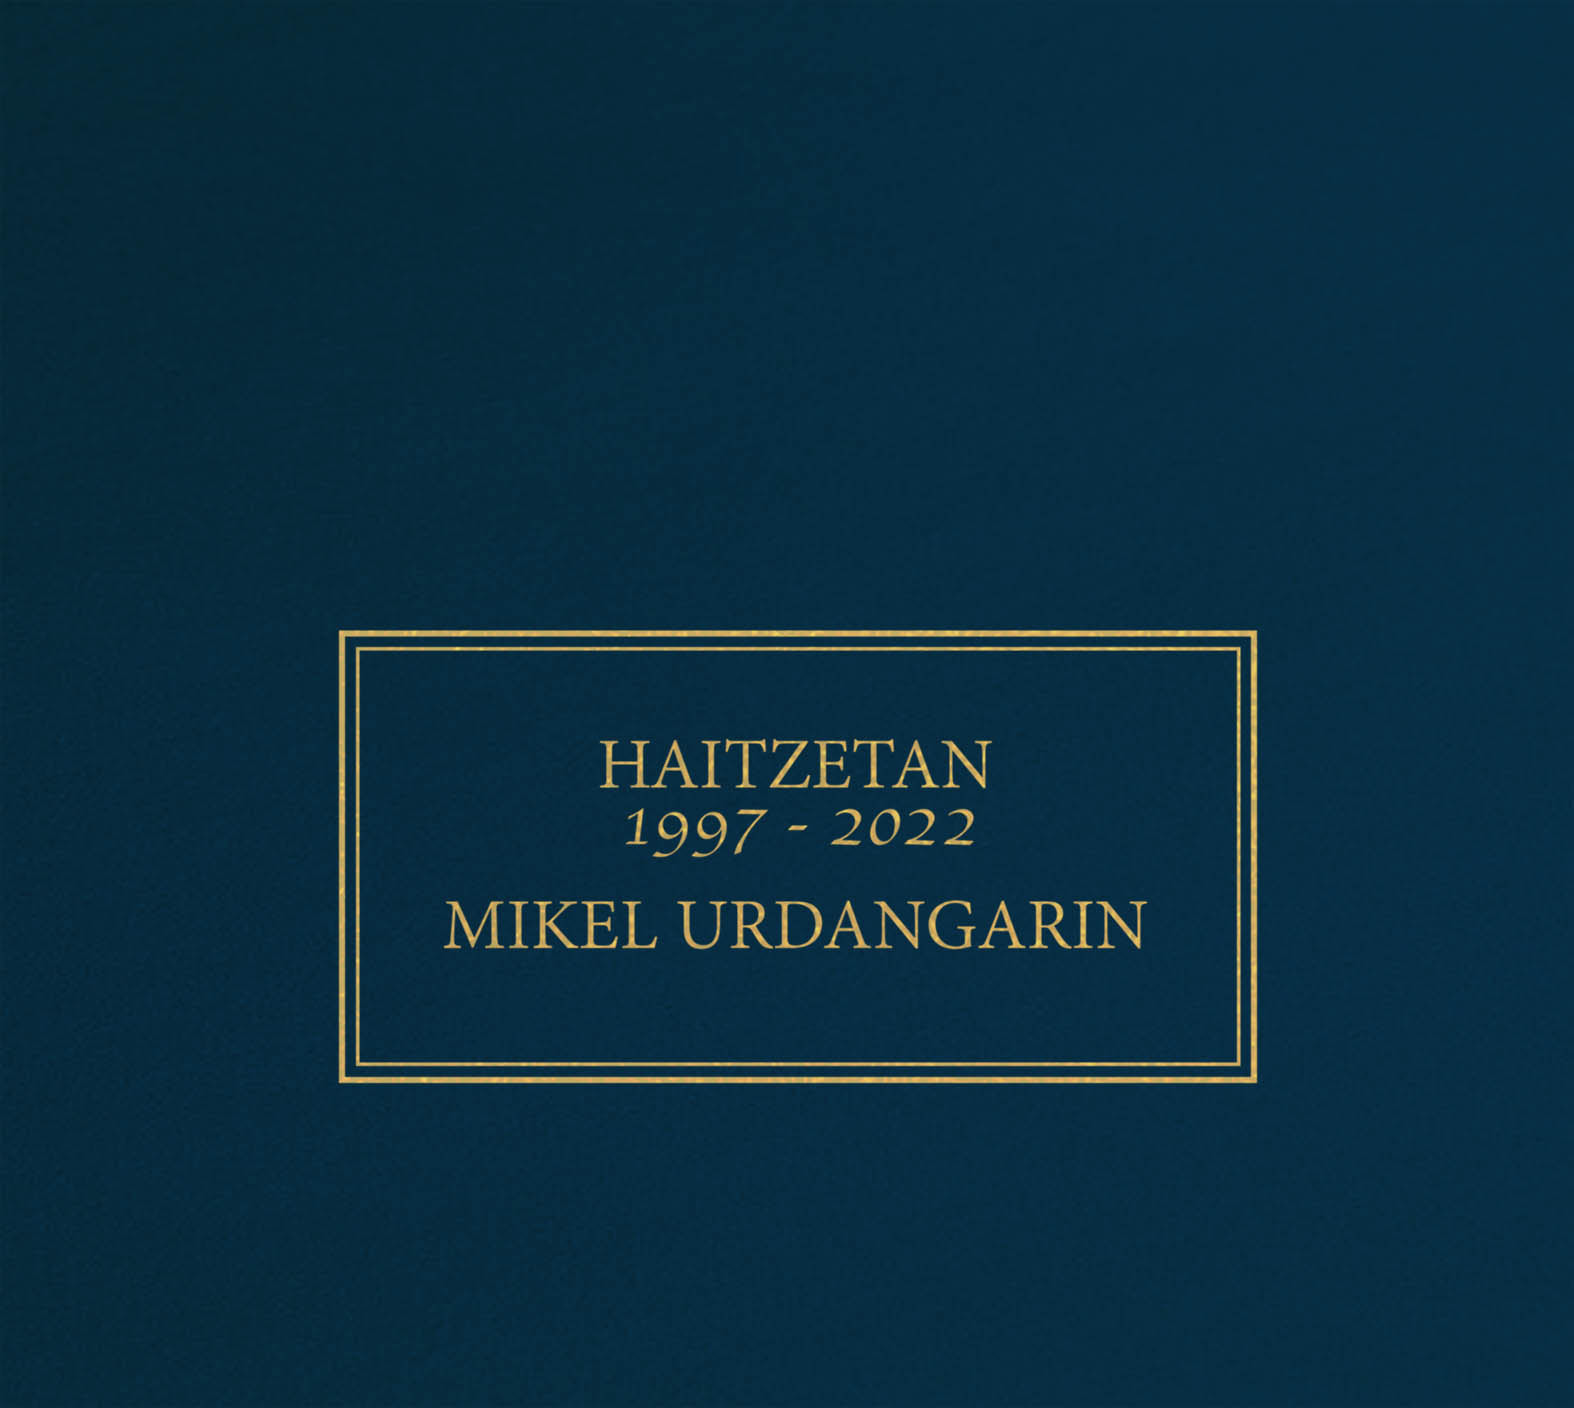 Mikel Urdangarin Haitzetan